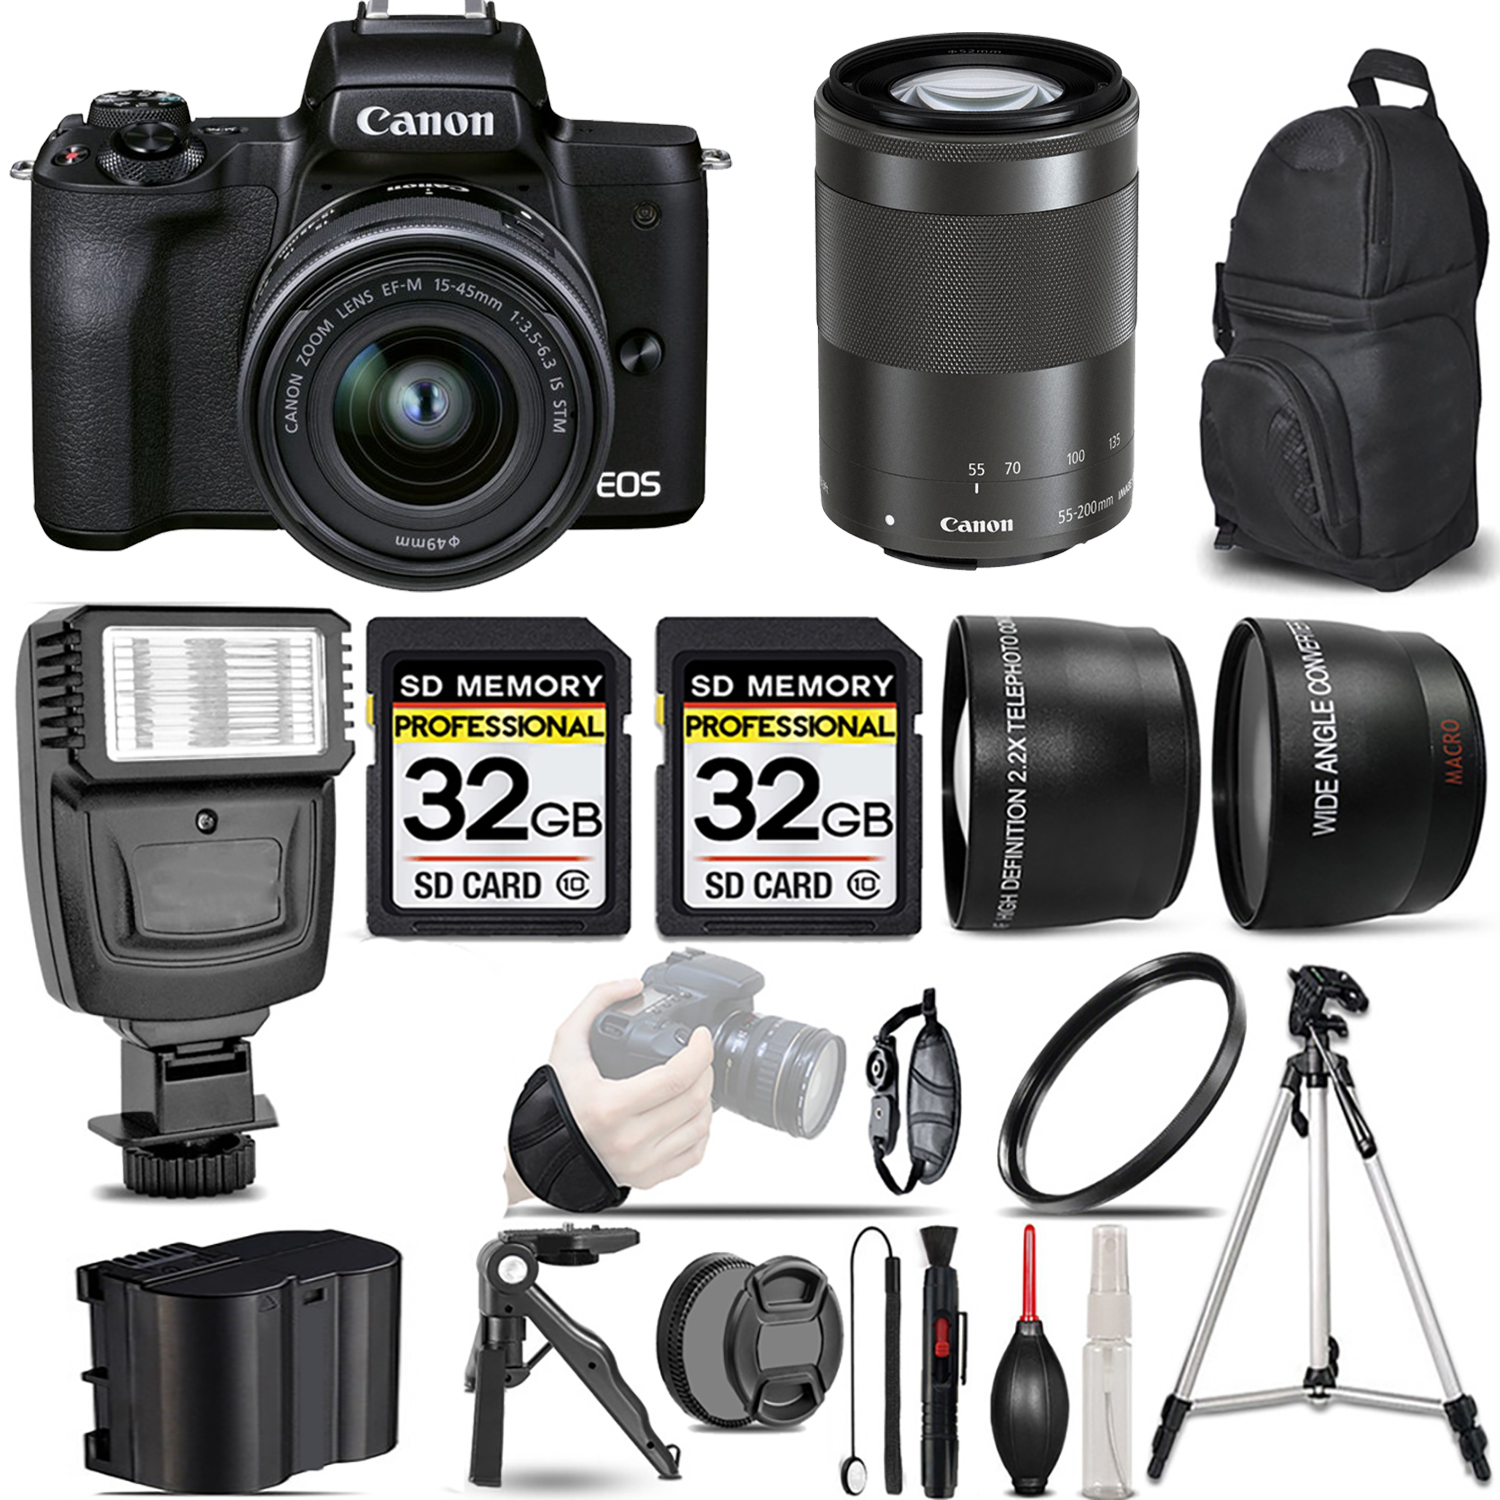 M50 II + 15-45mm Lens (Black) + 55-200mm IS Lens (Black) + Flash + 64GB *FREE SHIPPING*